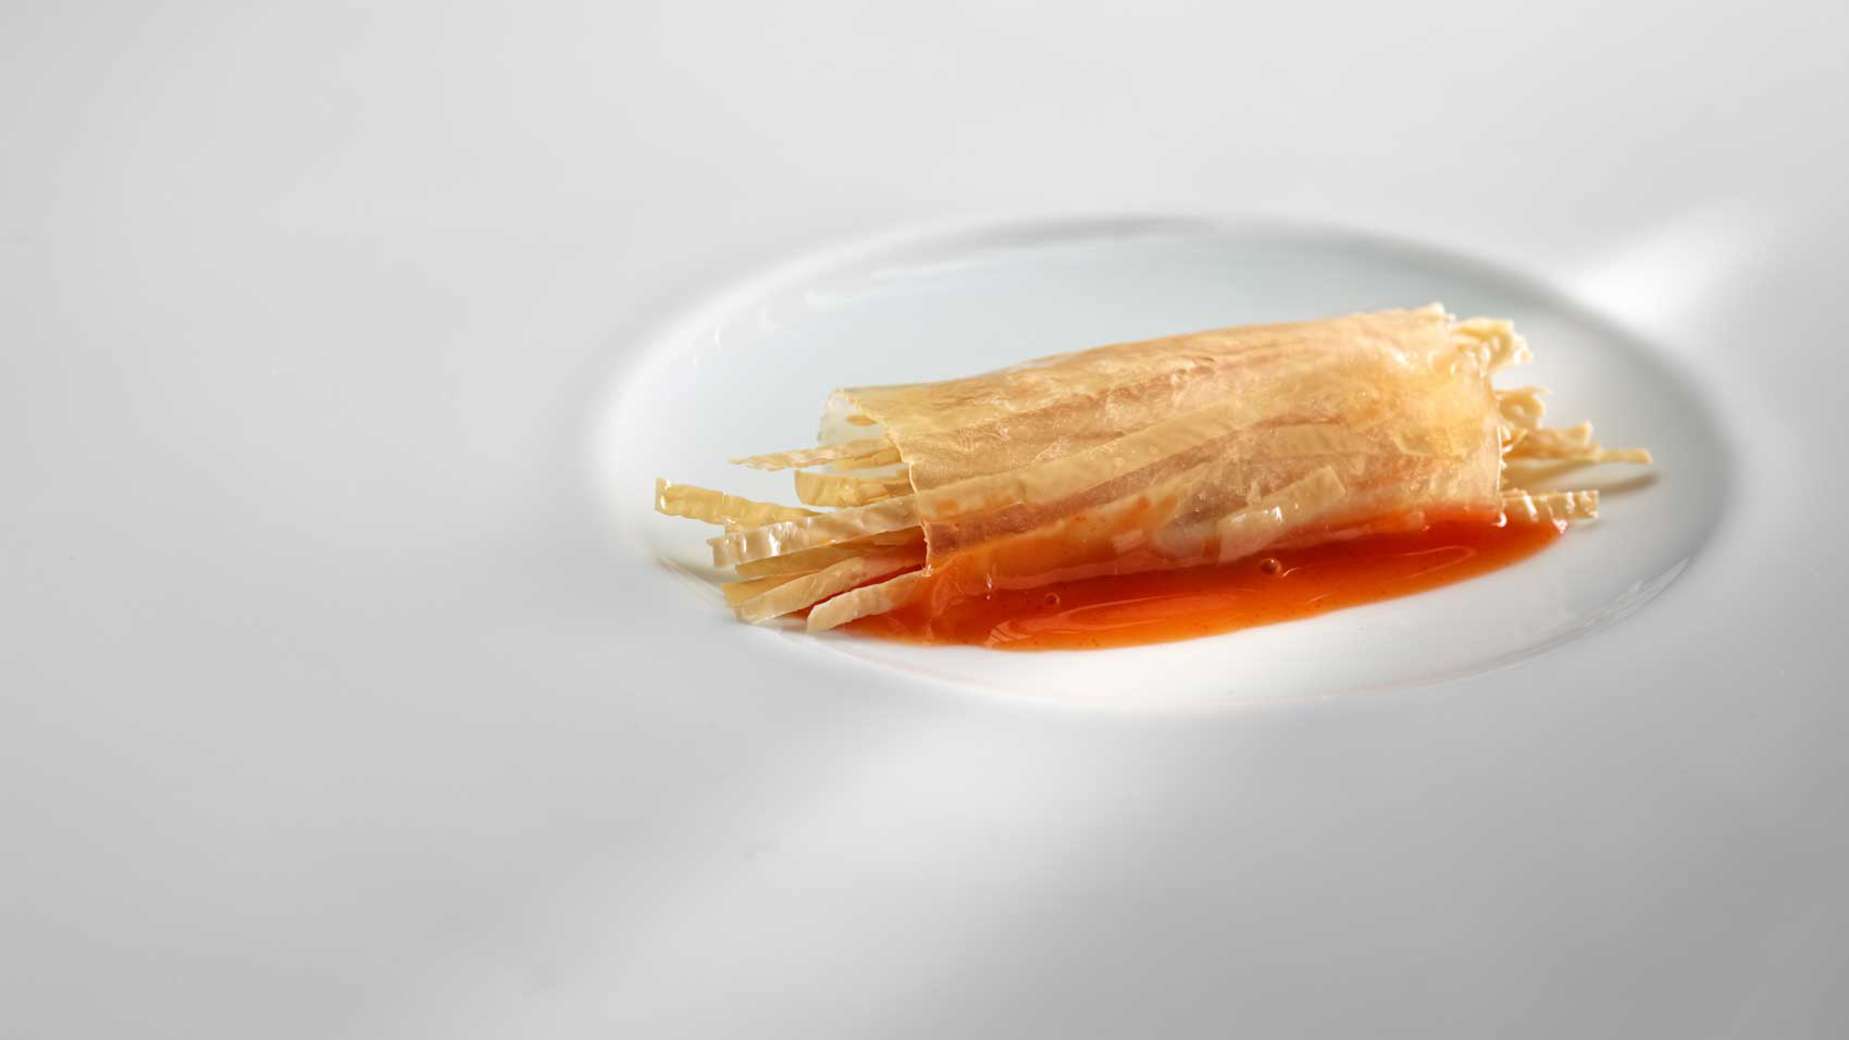 Esne fideo lehorrak eta hirugihar lamak tomate eta kuia zukutan azkar batean blaituak. 
ARGAZKIA: José Luis López de Zubiría / Mugaritz